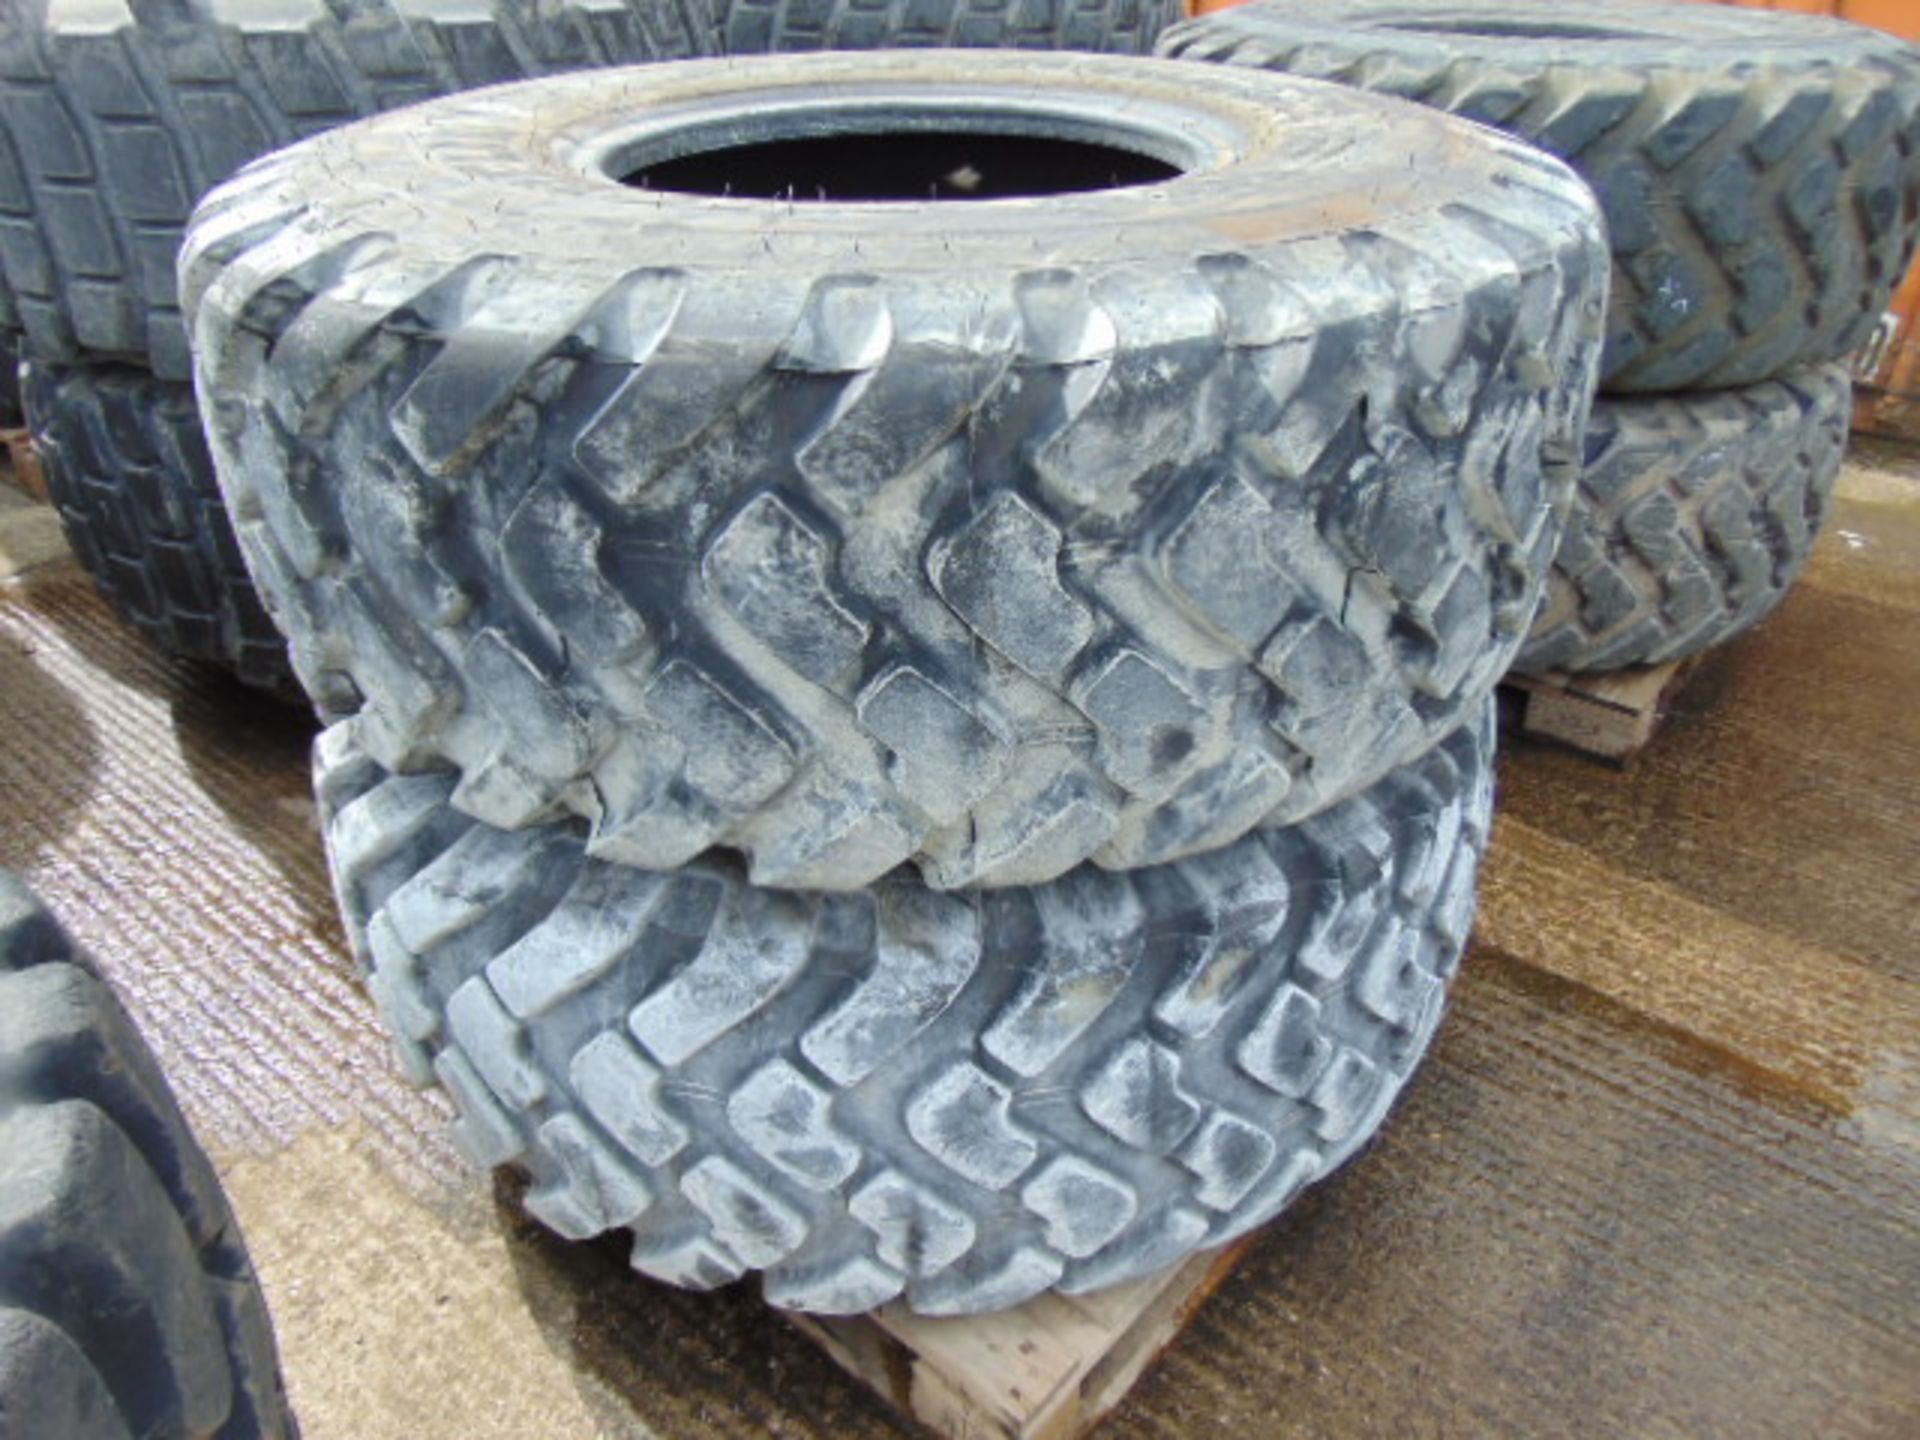 2 x Michelin 20.5 R25 XTLA Tyres